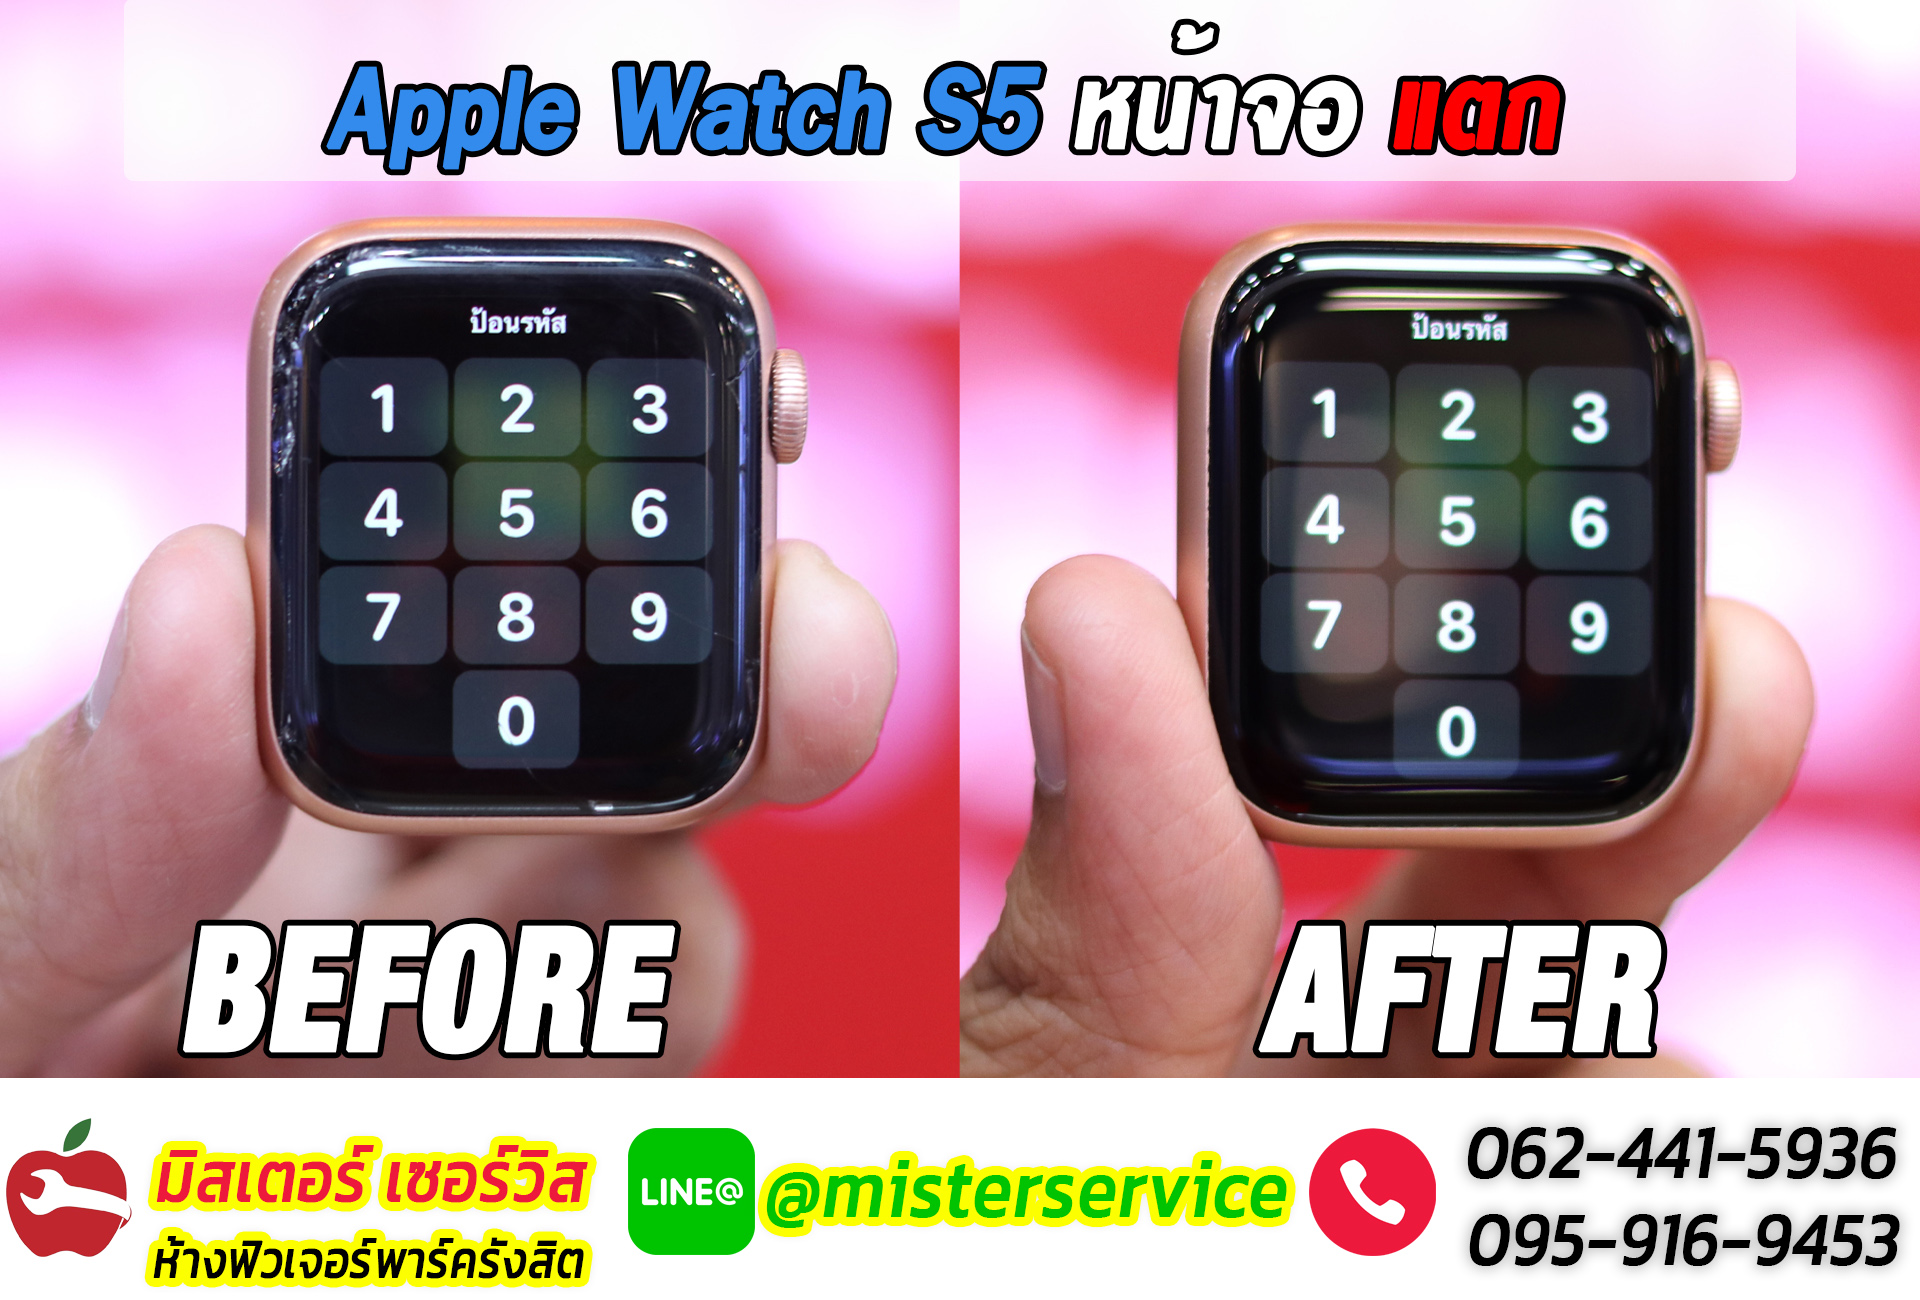 ซ่อม Apple Watch ยะลา ปัตตานี